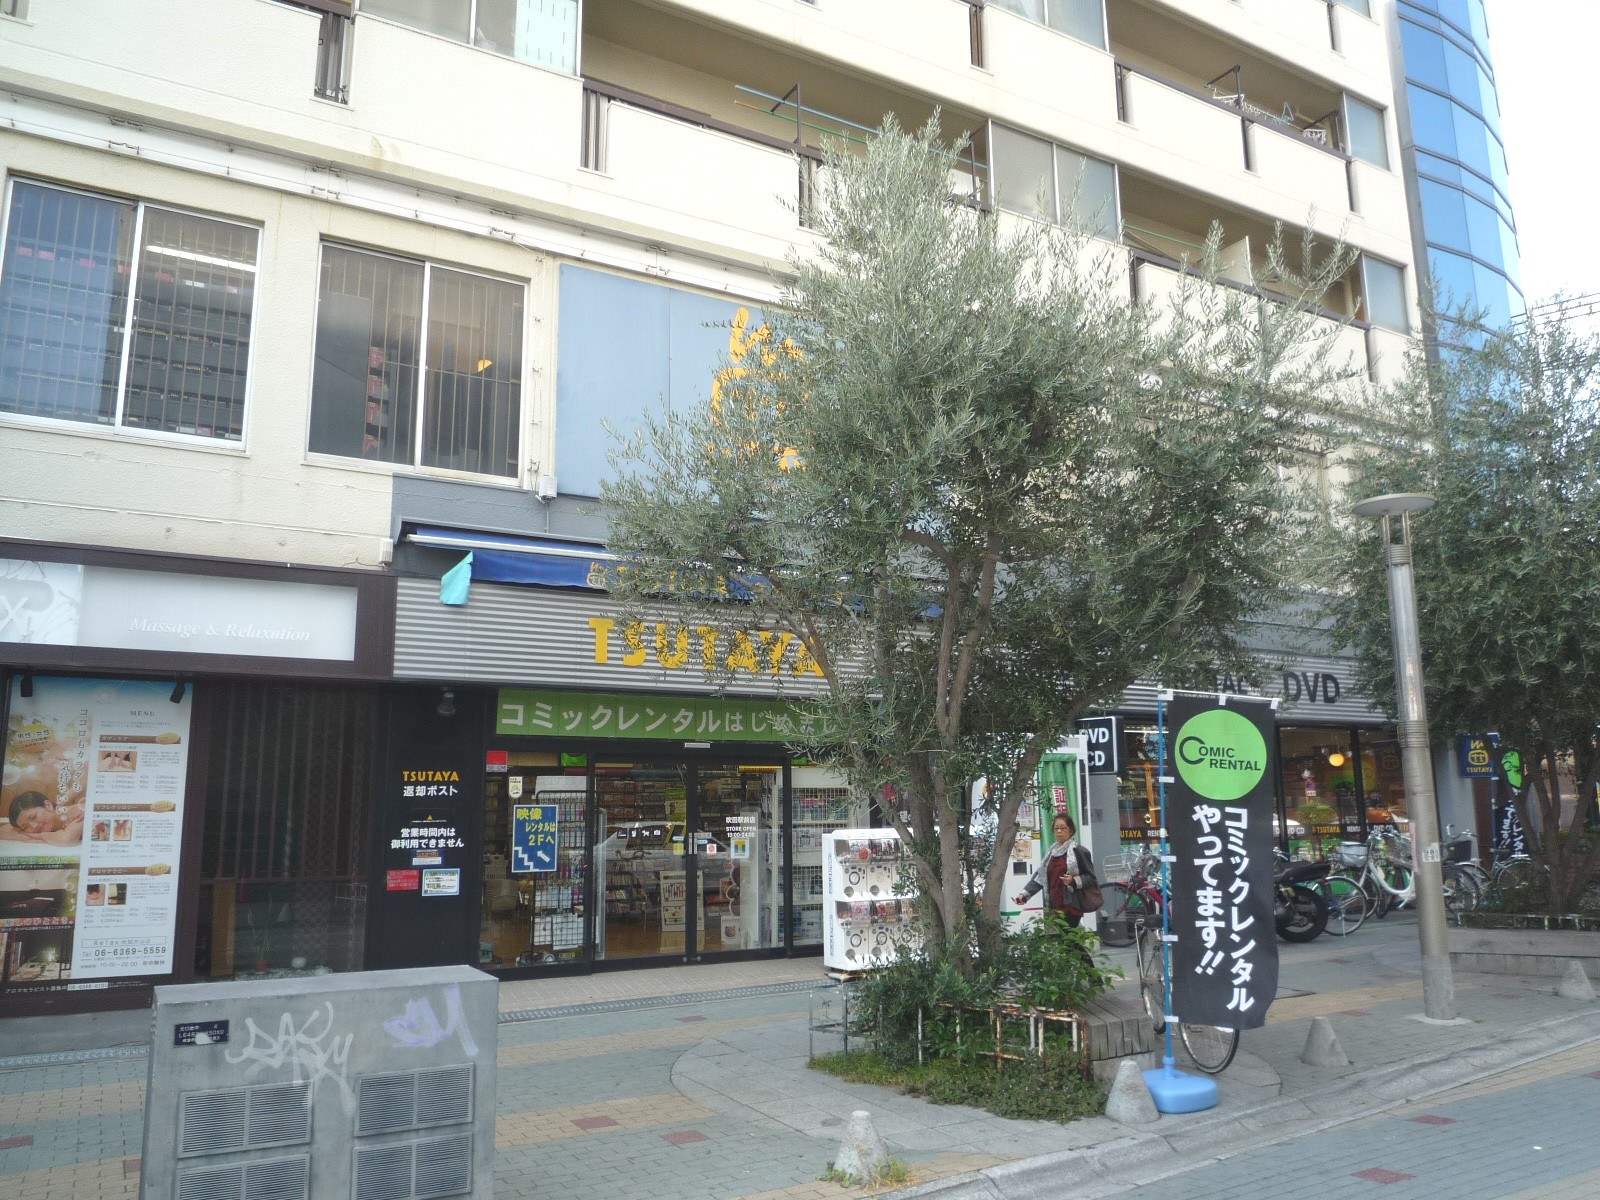 Rental video. TSUTAYA Suita Station shop 708m up (video rental)